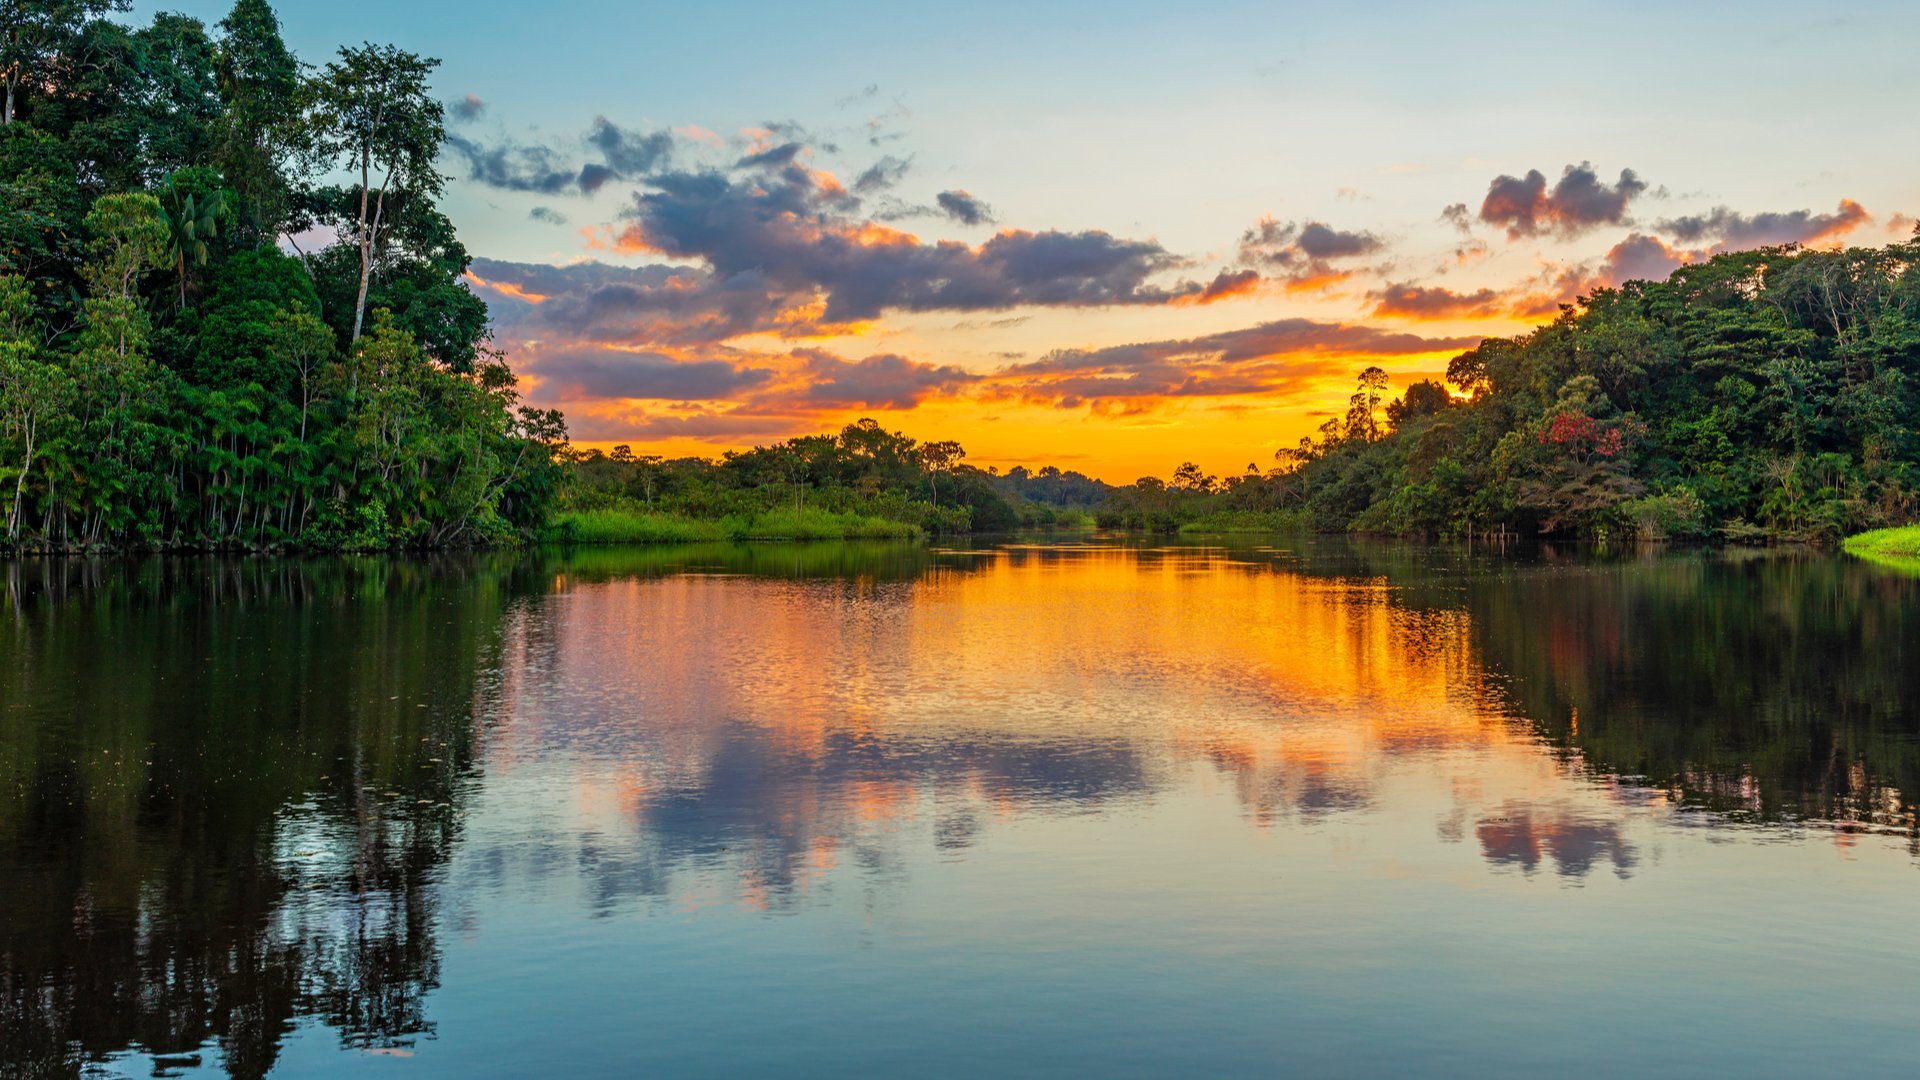 Conheça as 7 maravilhas naturais do mundo | Floresta Amazônica | Conexão123